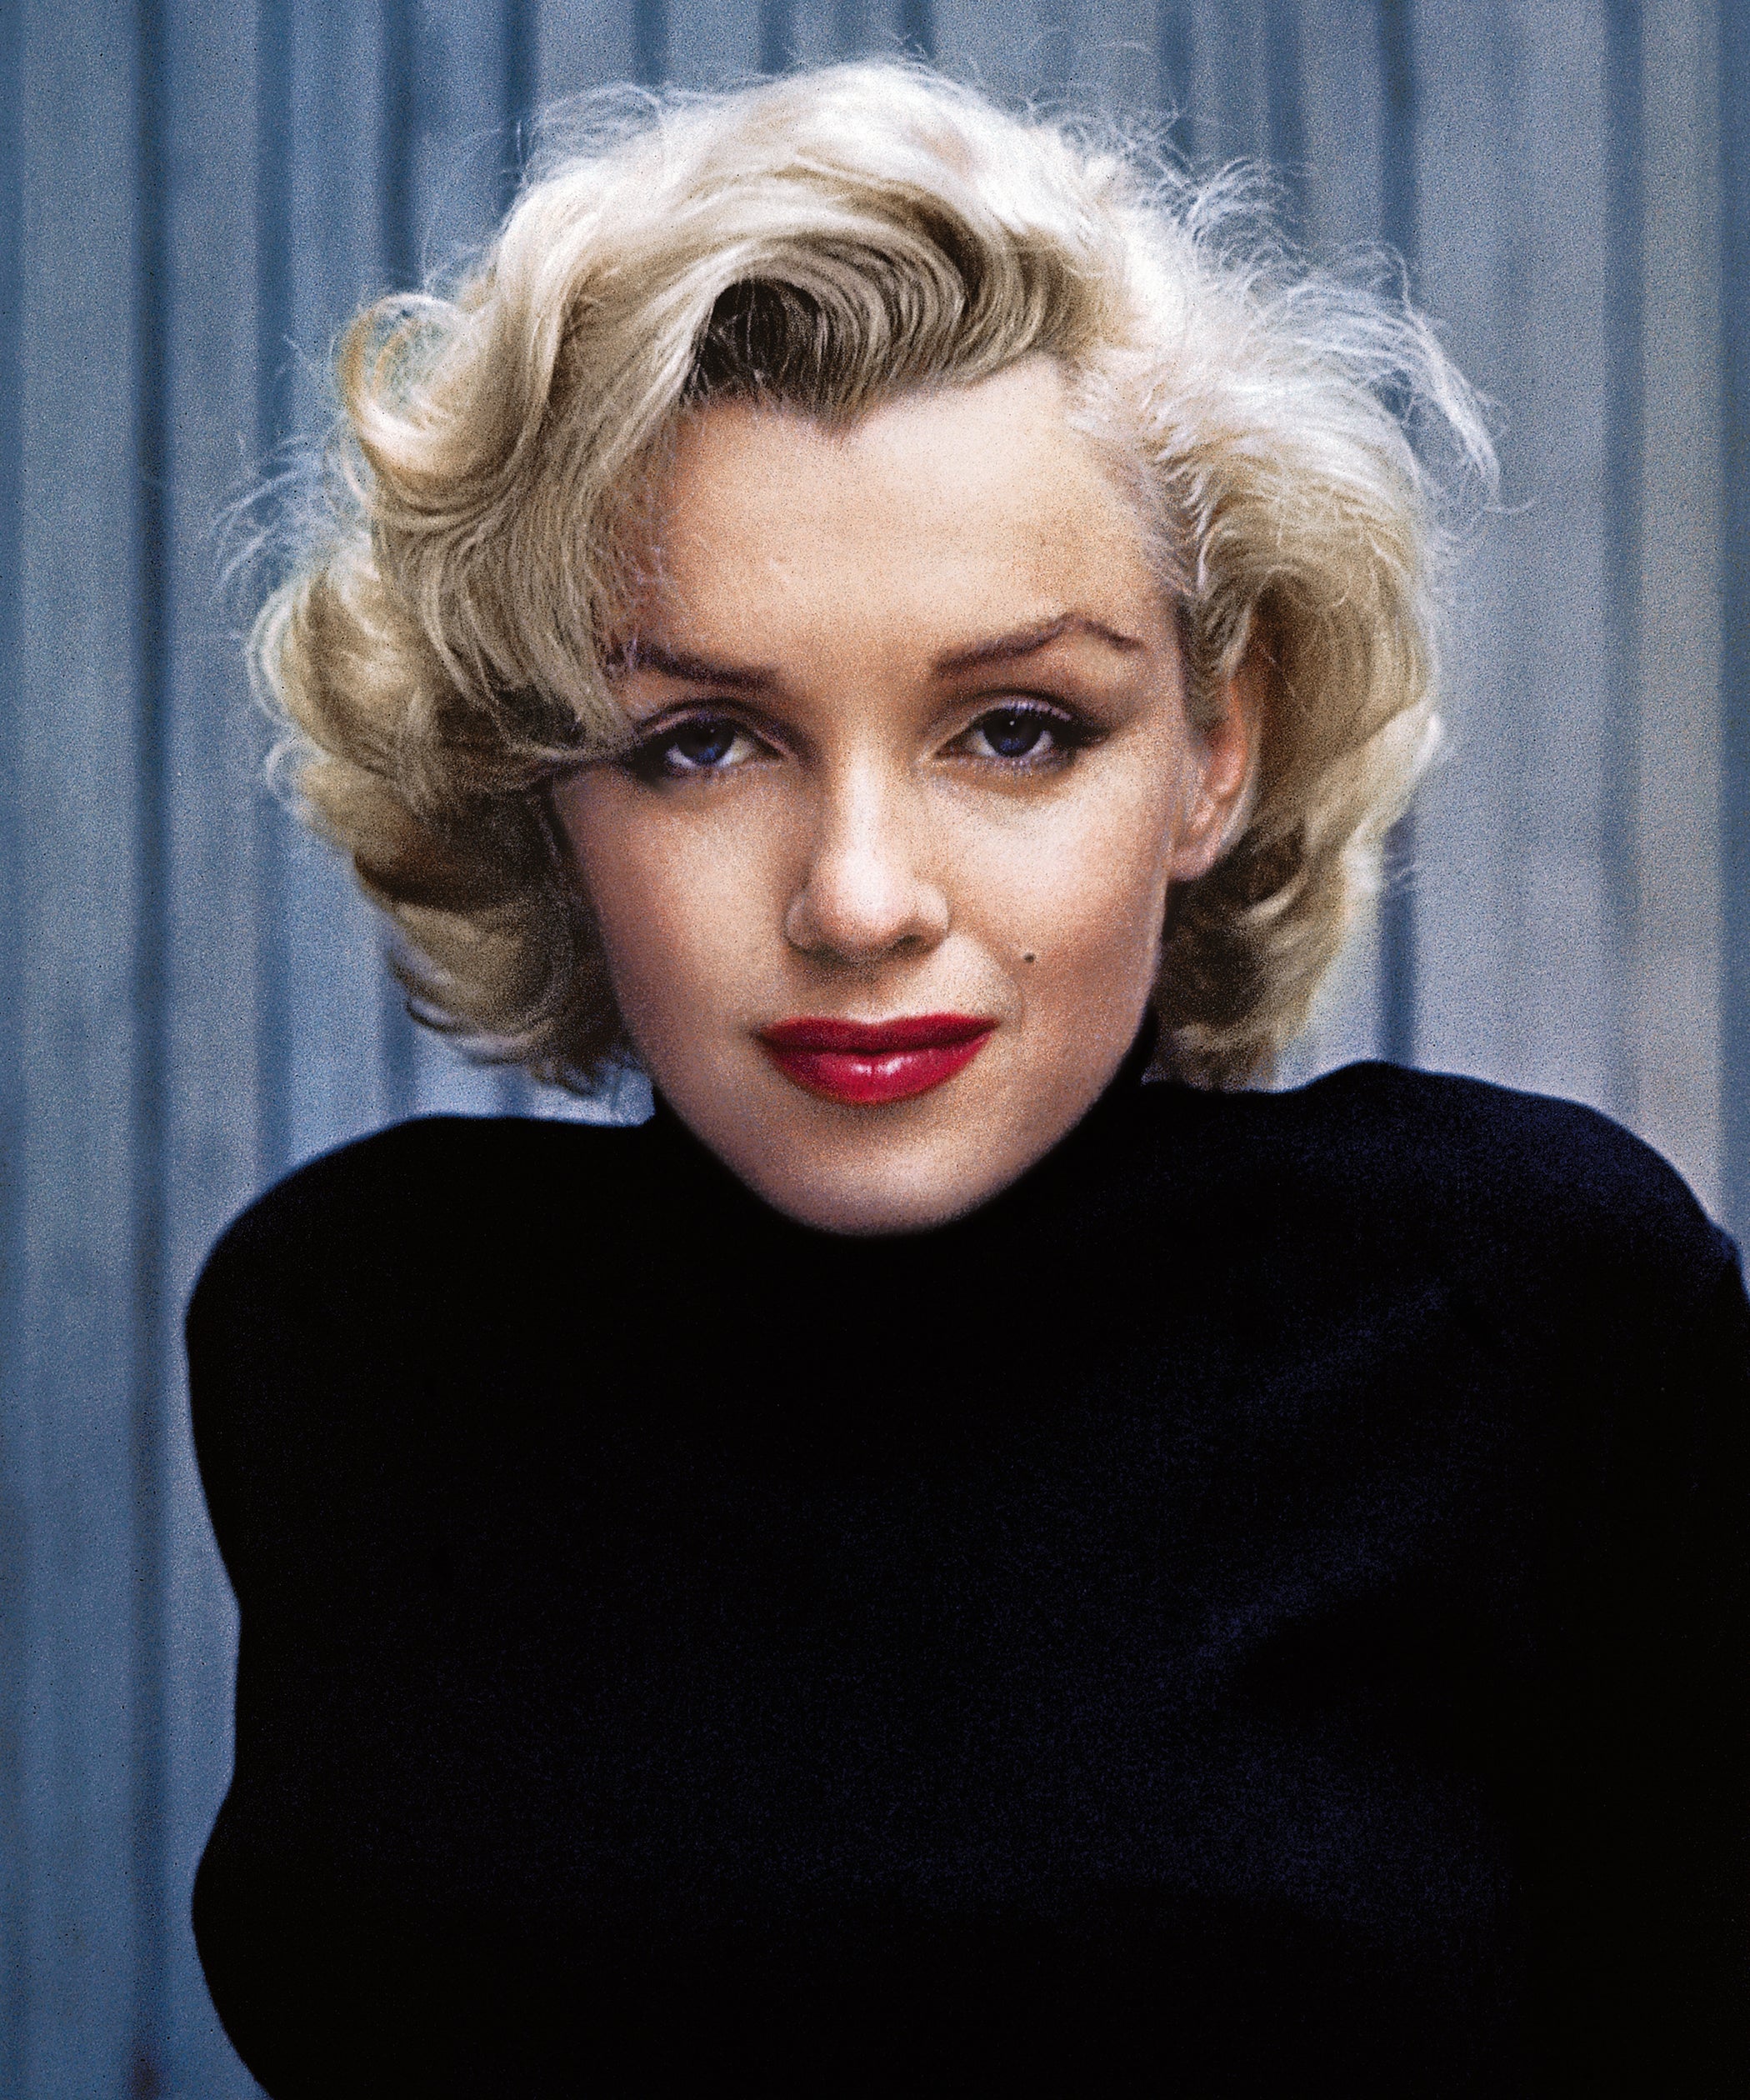 La routine soins du visage de Marilyn Monroe dévoilée